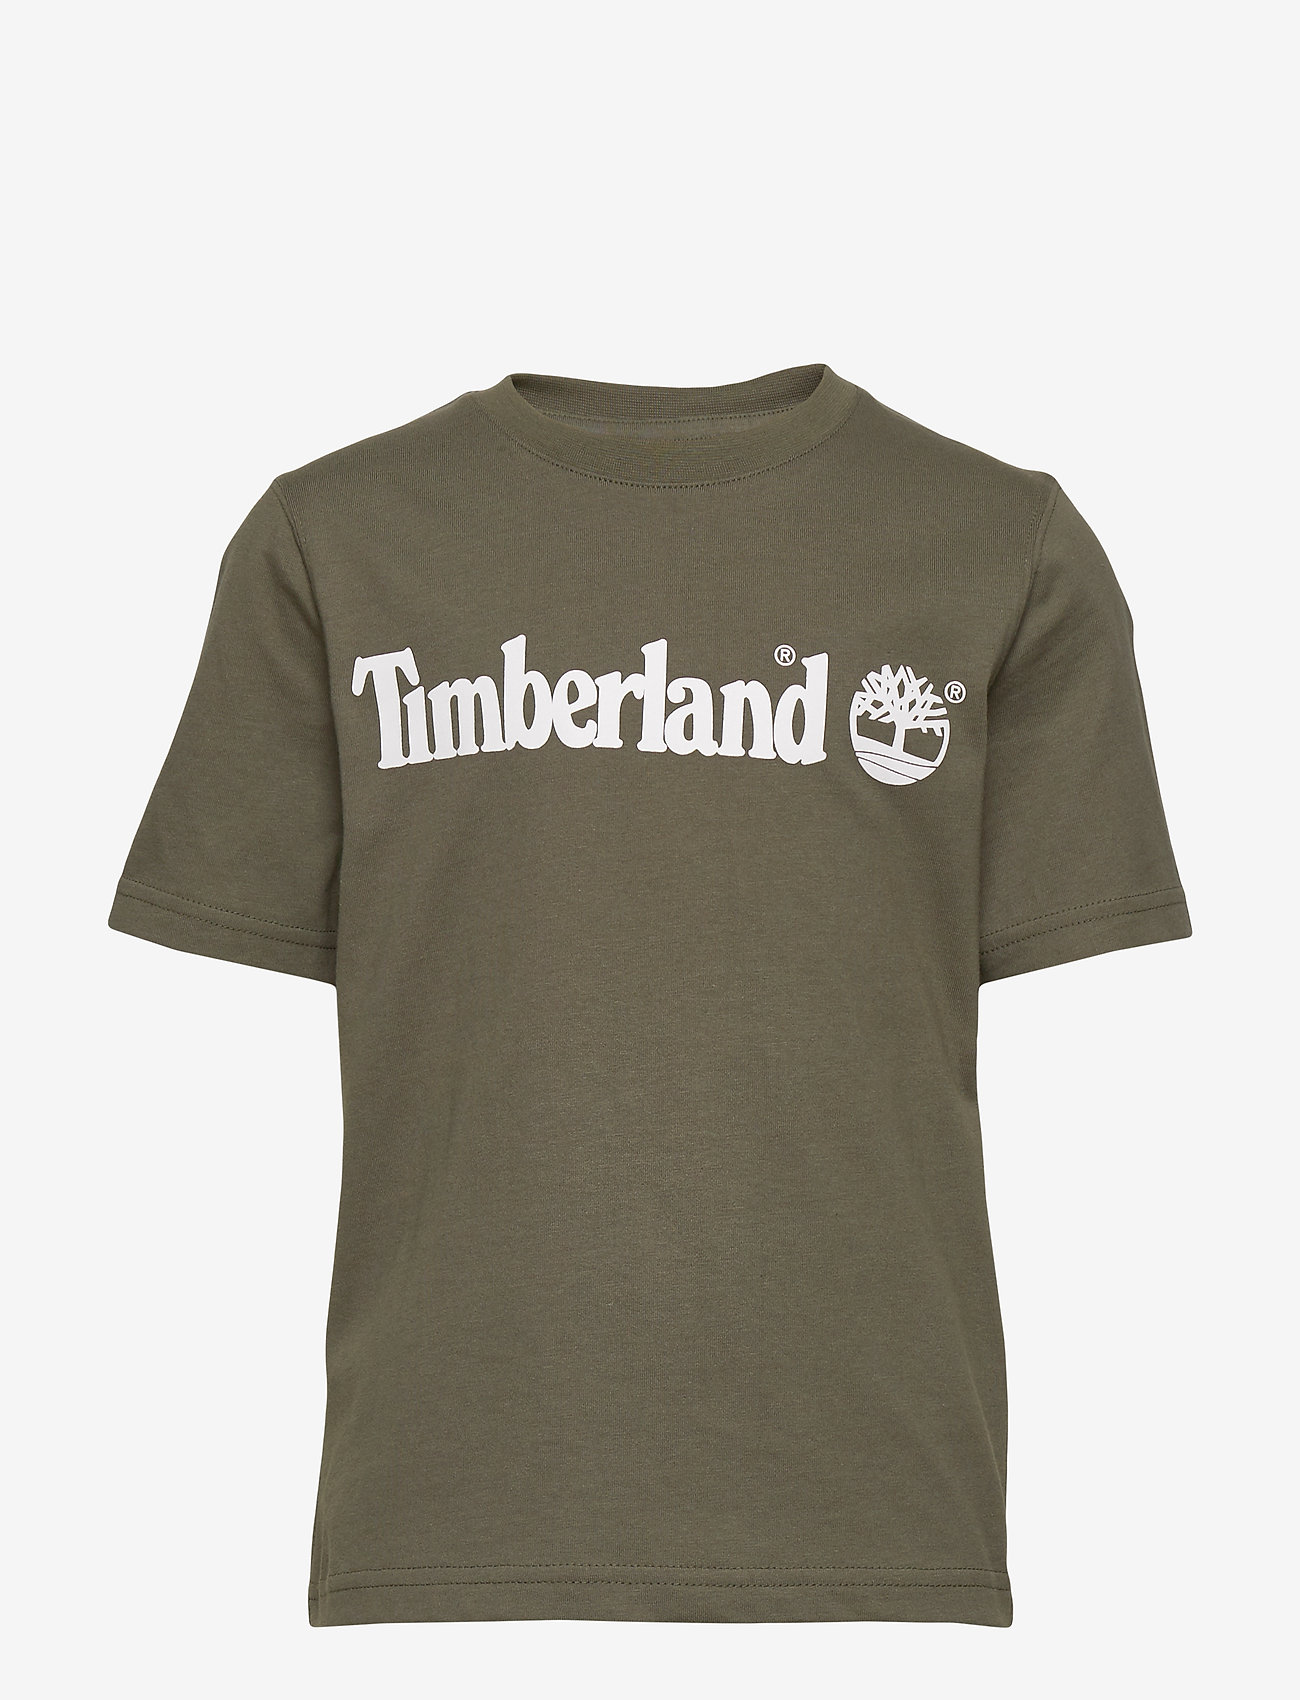 timberland green shirt